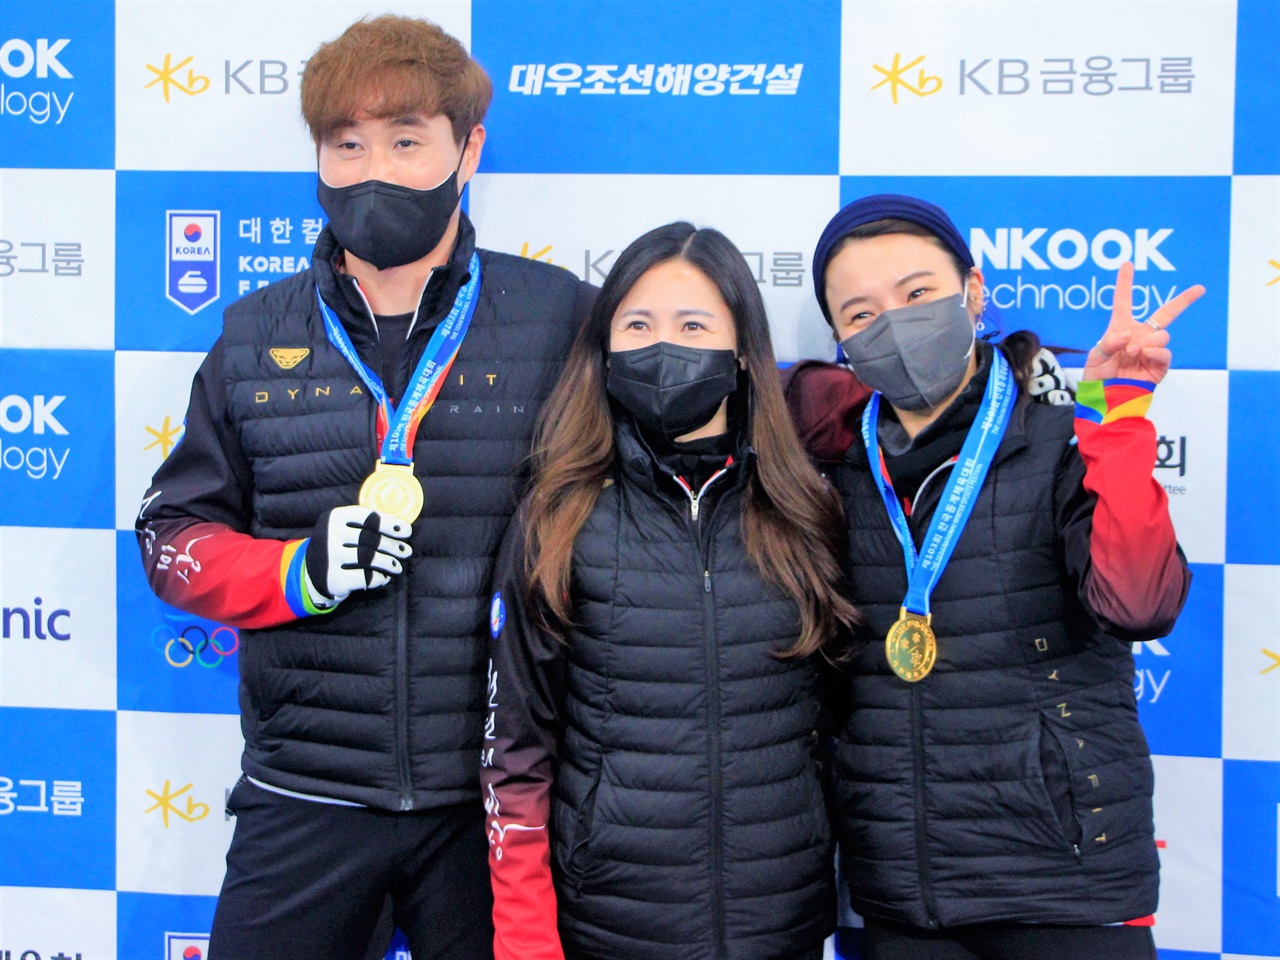  동계체전 컬링 종목에서 첫 메달을 획득한 전라북도청의 남윤호(왼쪽) - 엄민지(오른쪽) 조. 가운데는 정다겸 감독.